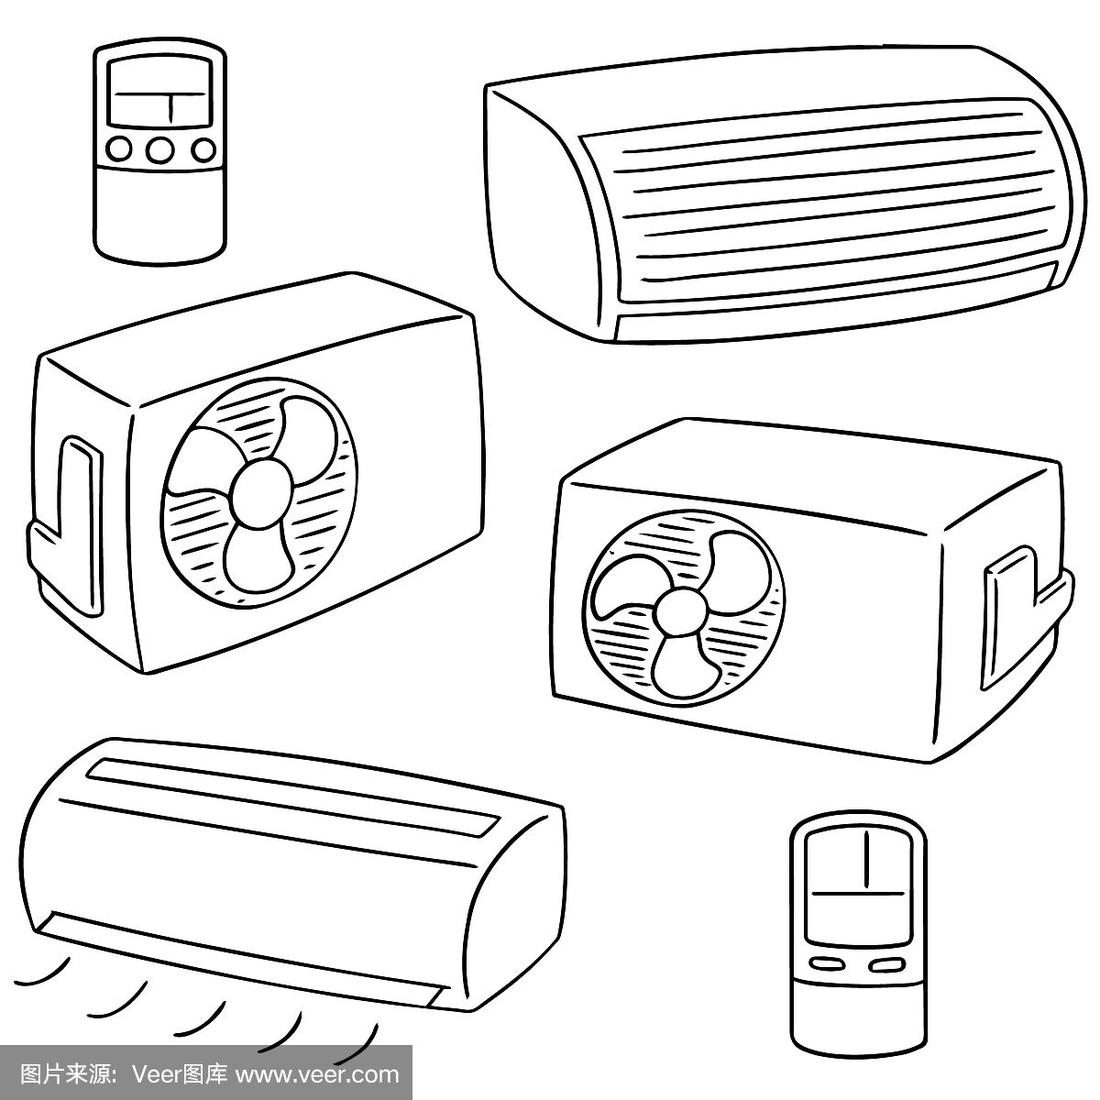 空调功率一般多大,空调选择技巧有哪些